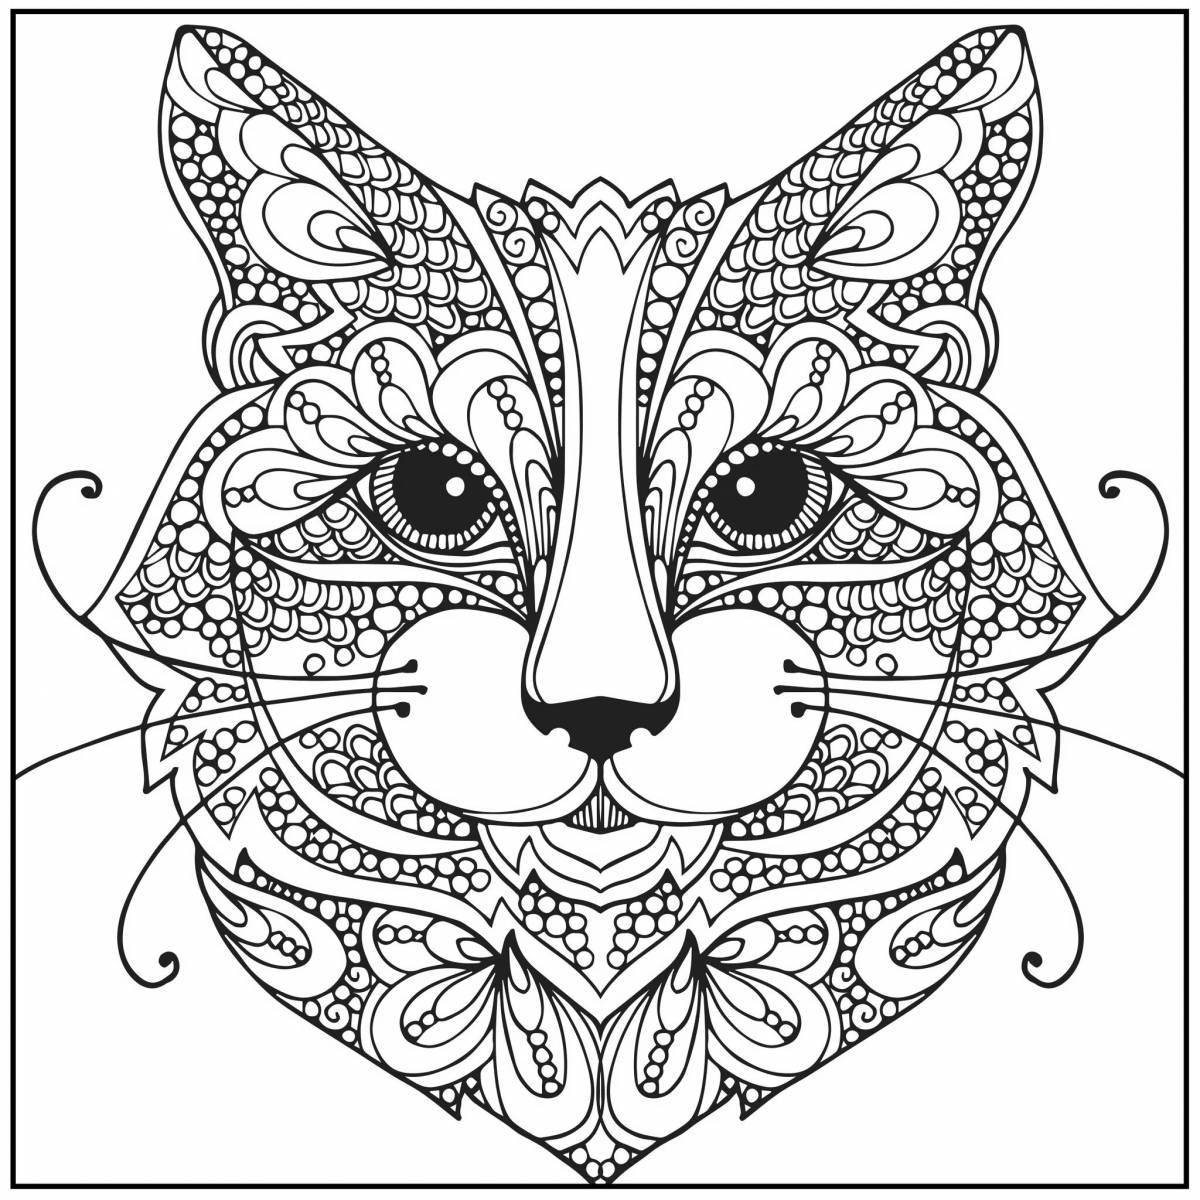 Glitter cat mandala coloring book